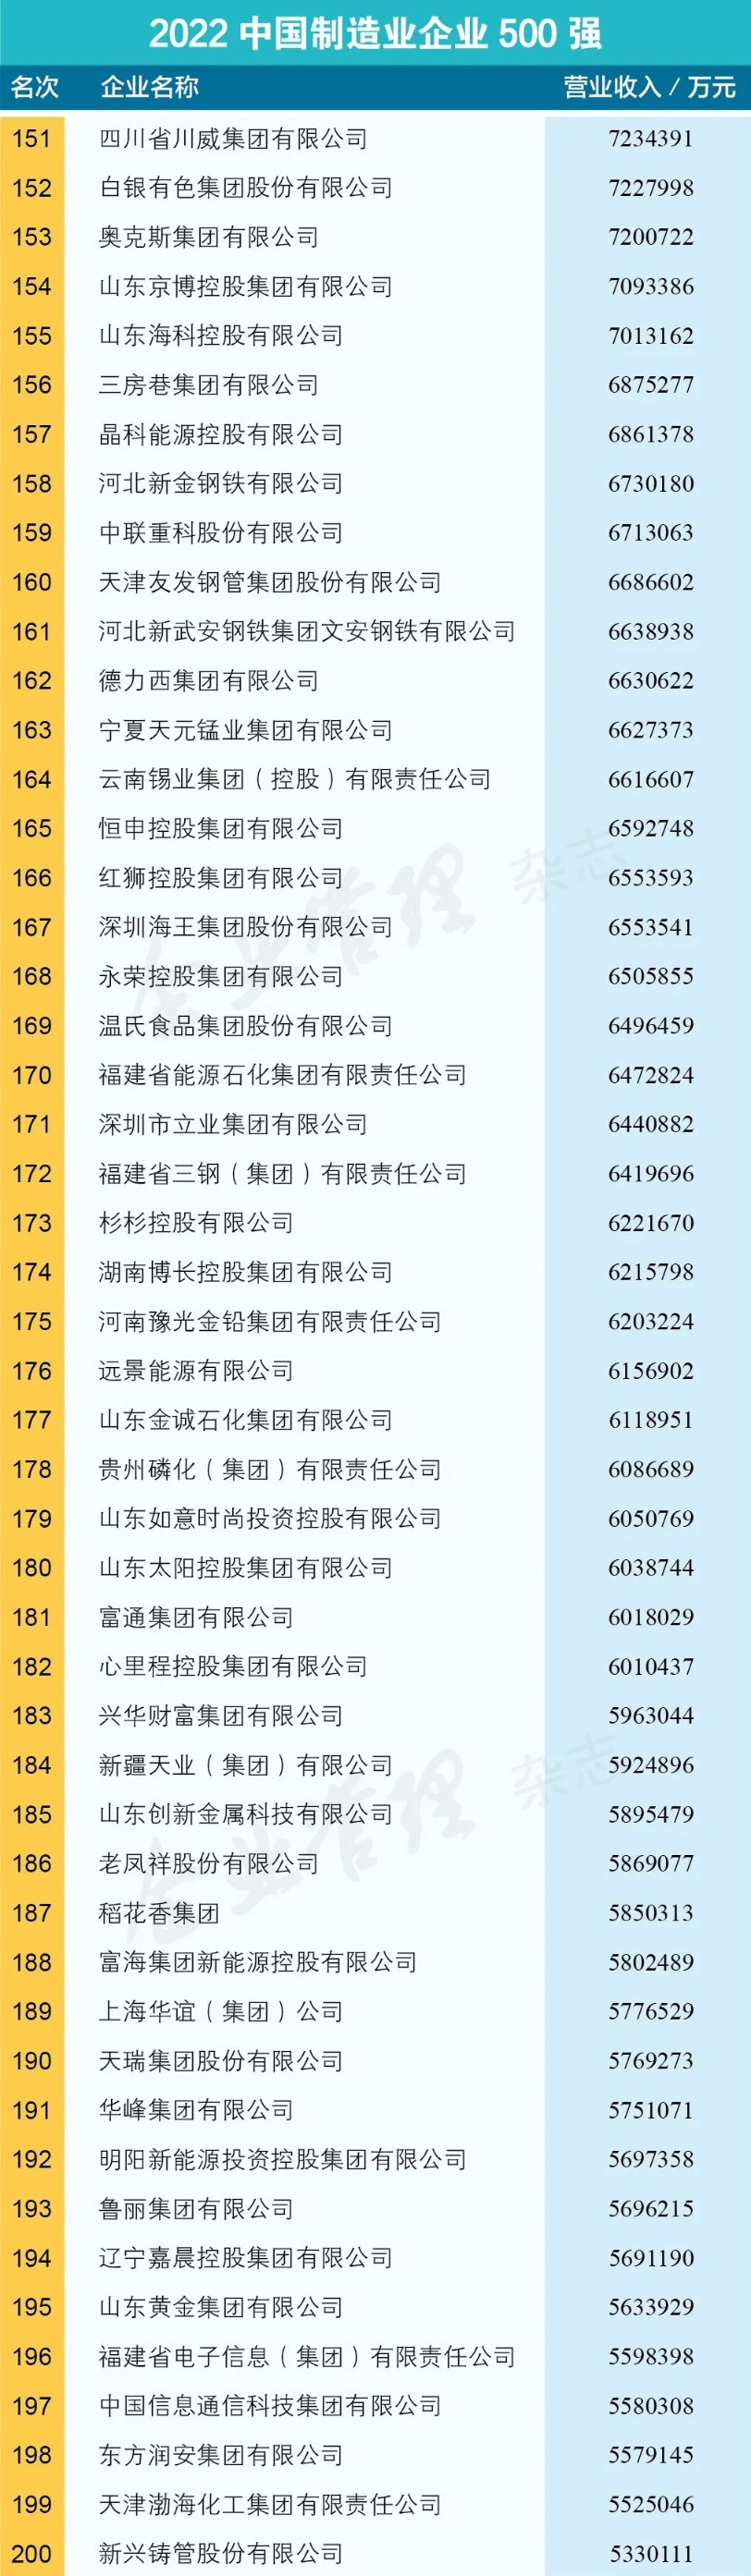 2022中国制造业500强名单